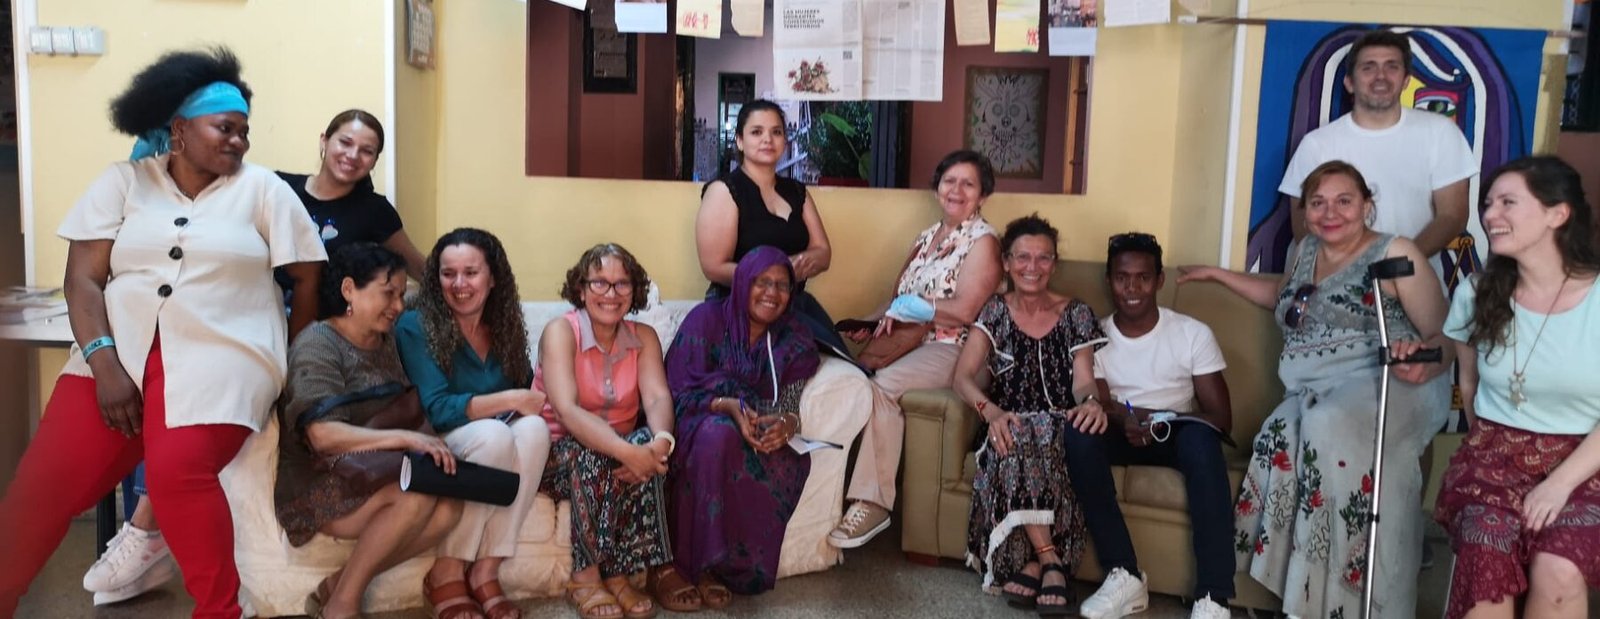 Mujeres intercambian historias migratorias para compartir saberes